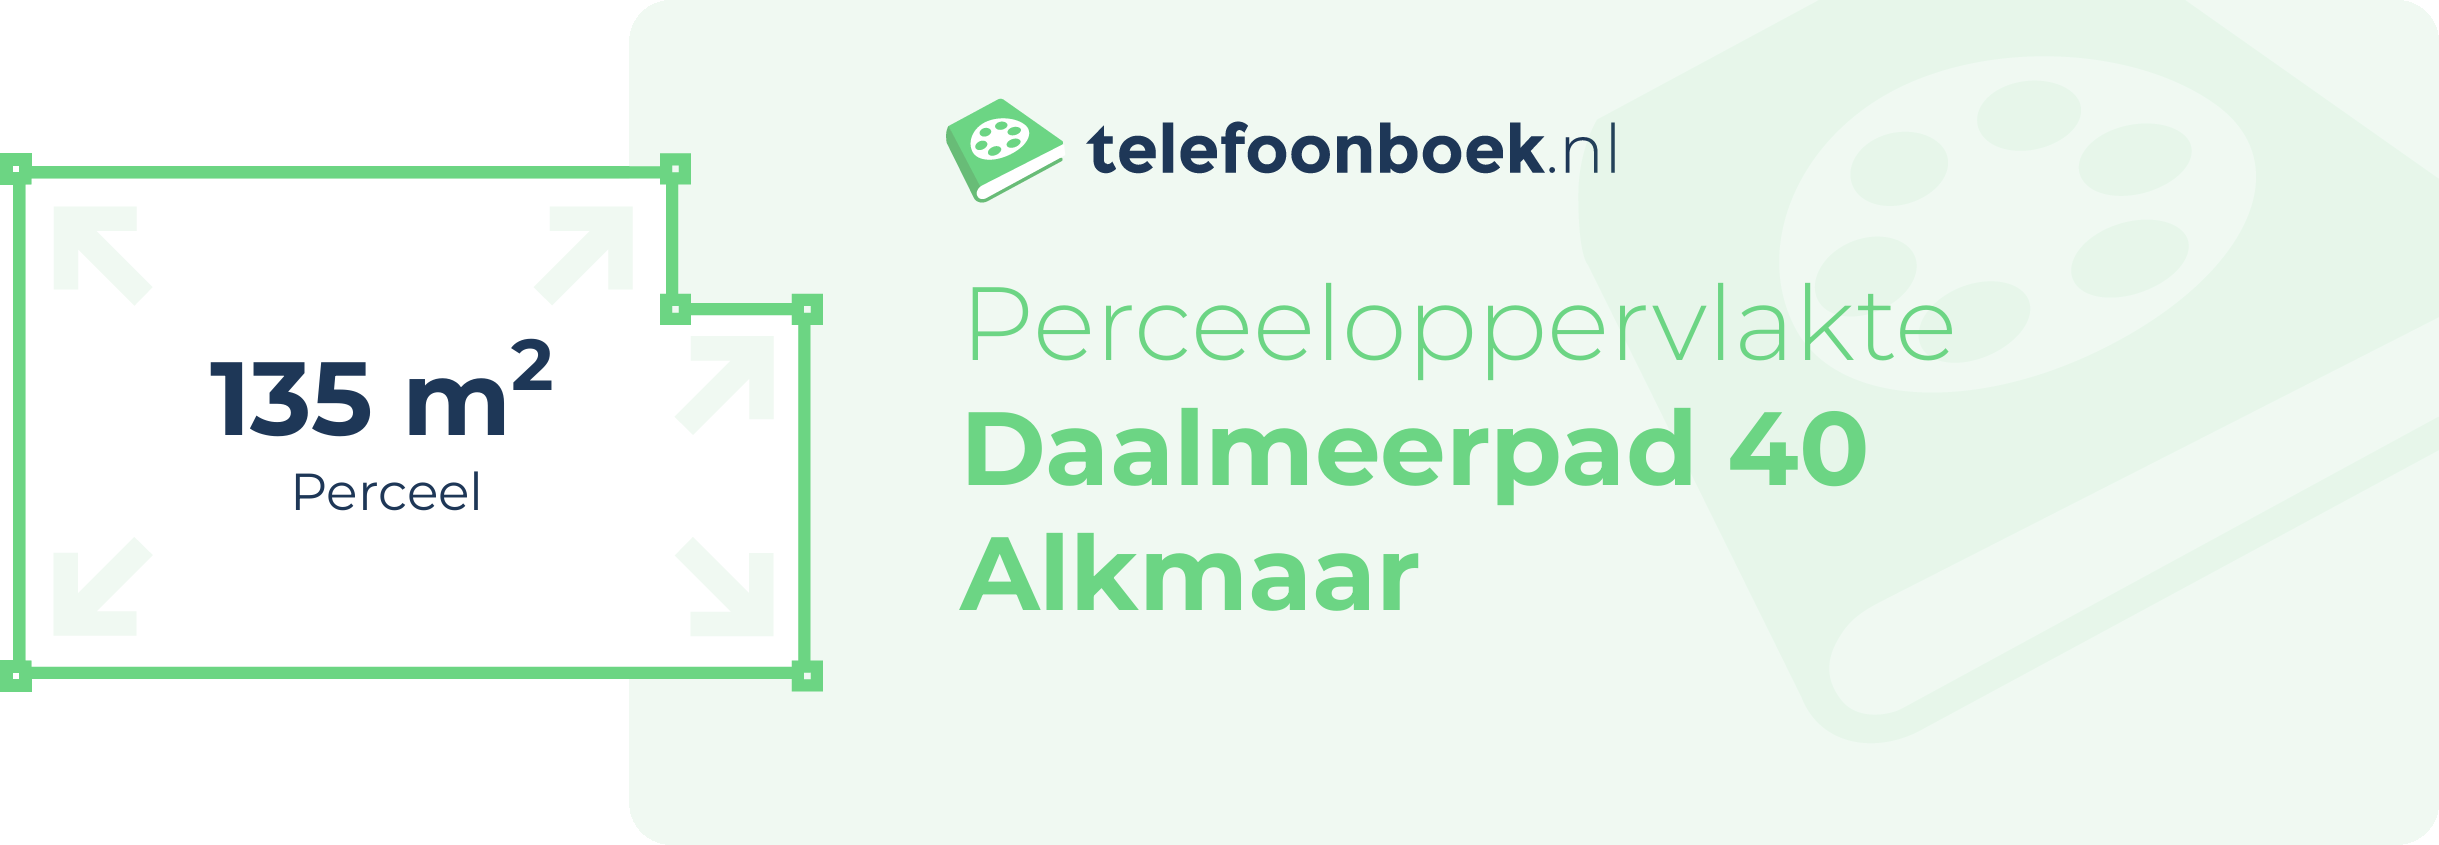 Perceeloppervlakte Daalmeerpad 40 Alkmaar